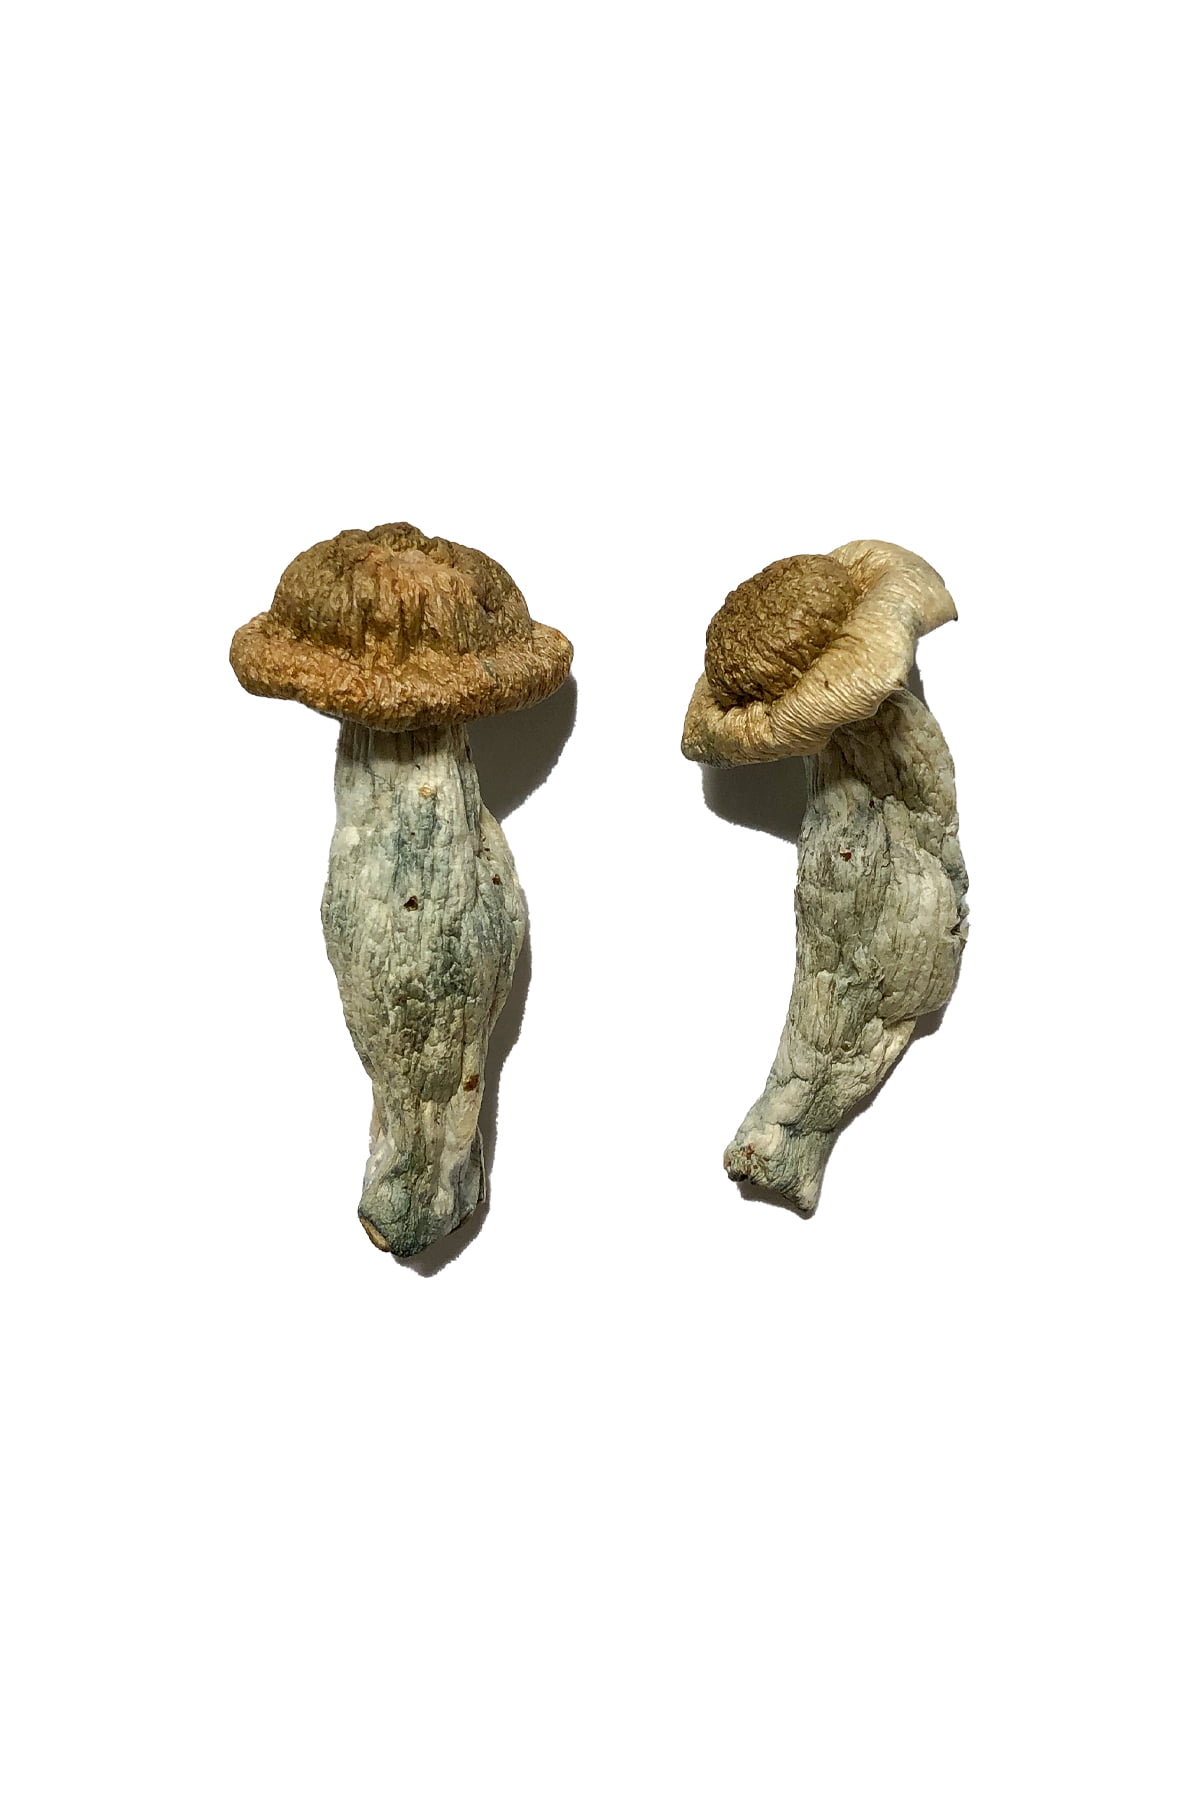 Buy Shepherds Cut Penis Envy Magic Mushrooms Online | Magic Mushrooms  Dispensary